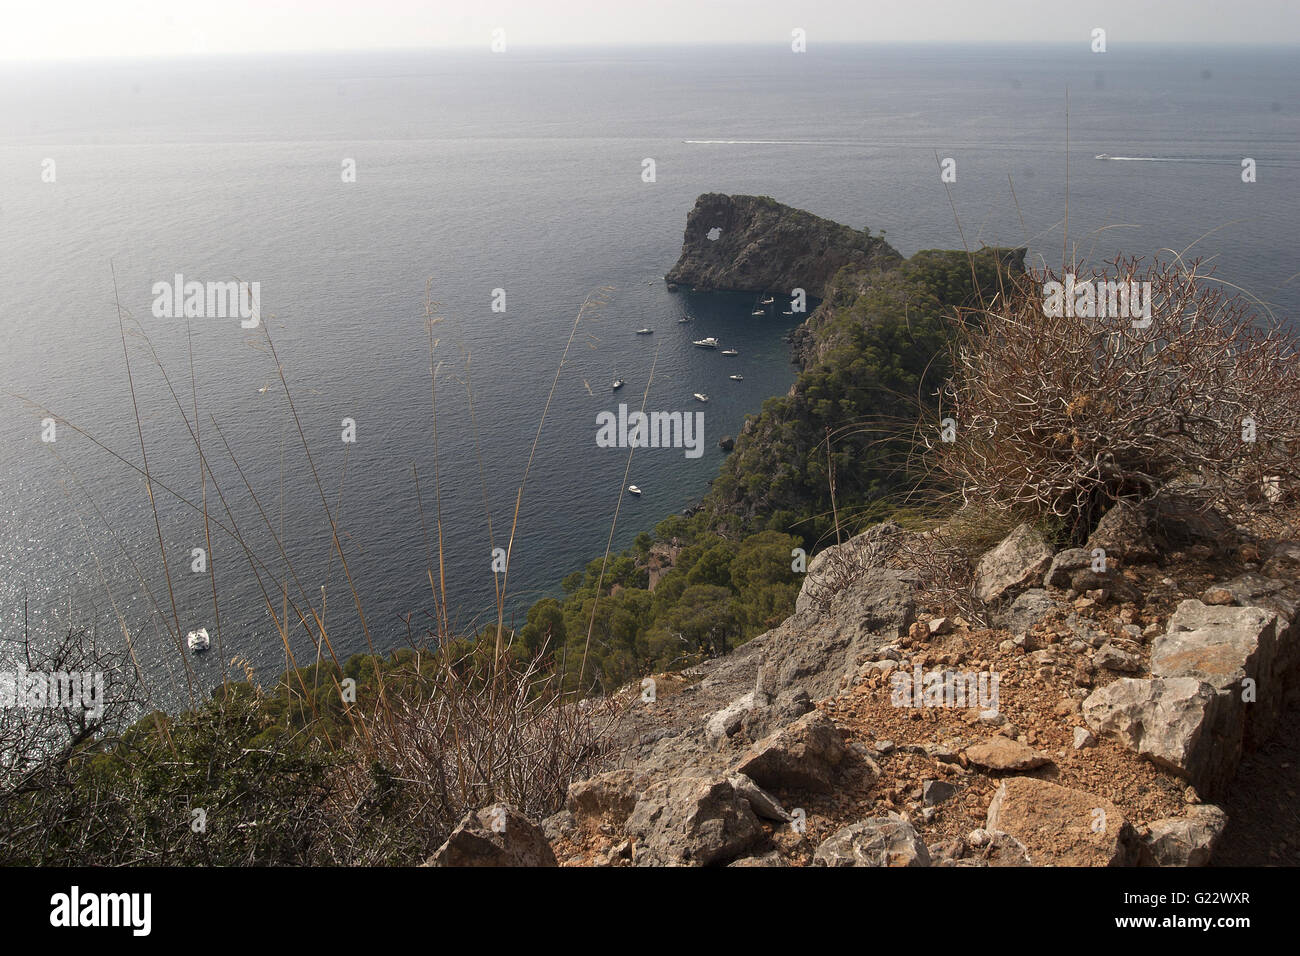 Una bella imagen de las costas mar azul con rocas y vegetación en primer plano en Palma de Mallorca, España, mar Foto de stock